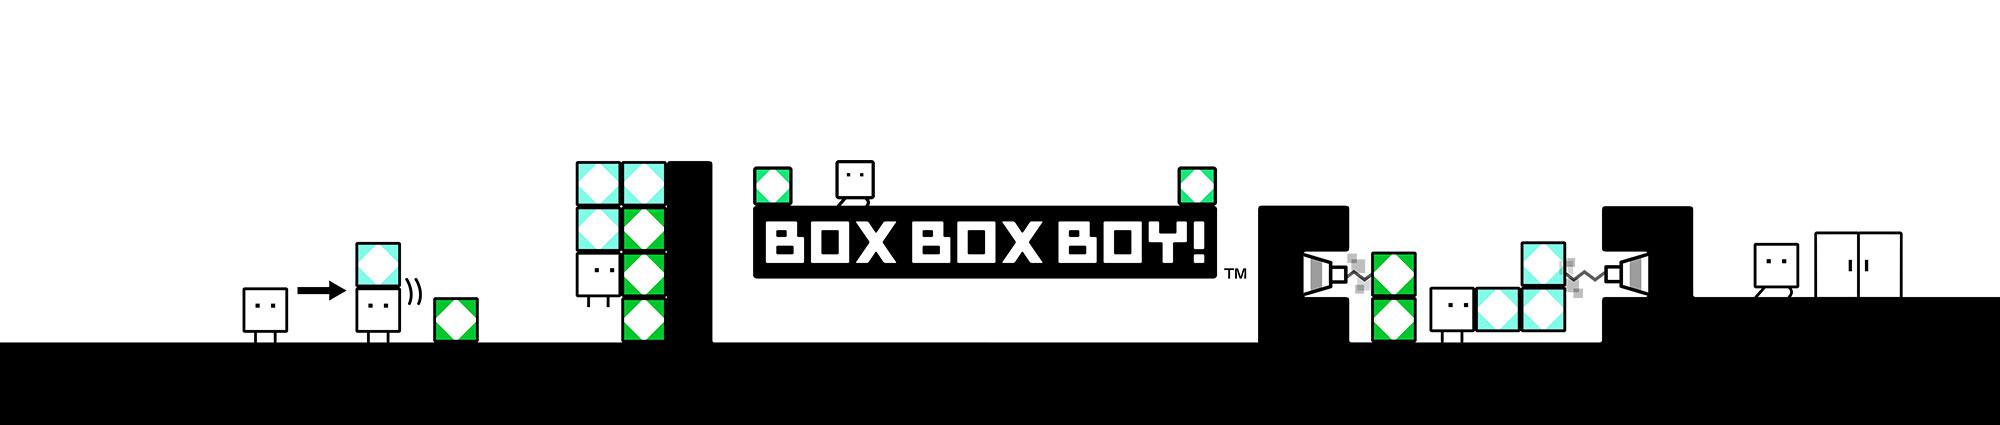 BoxBoxBoy! - recenzja gry